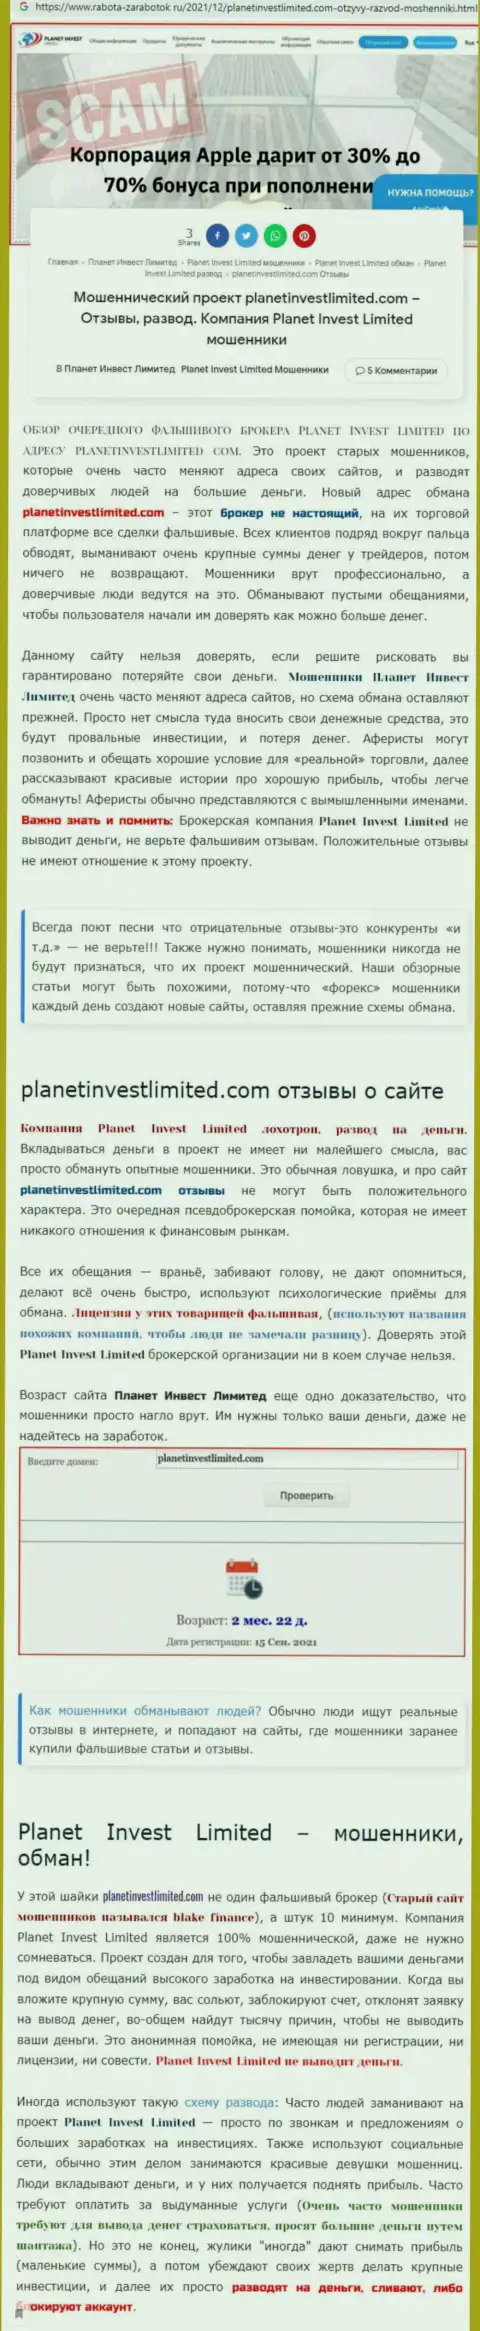 Не опасно ли работать с конторой Planet Invest Limited ? (Обзор противозаконных действий конторы)